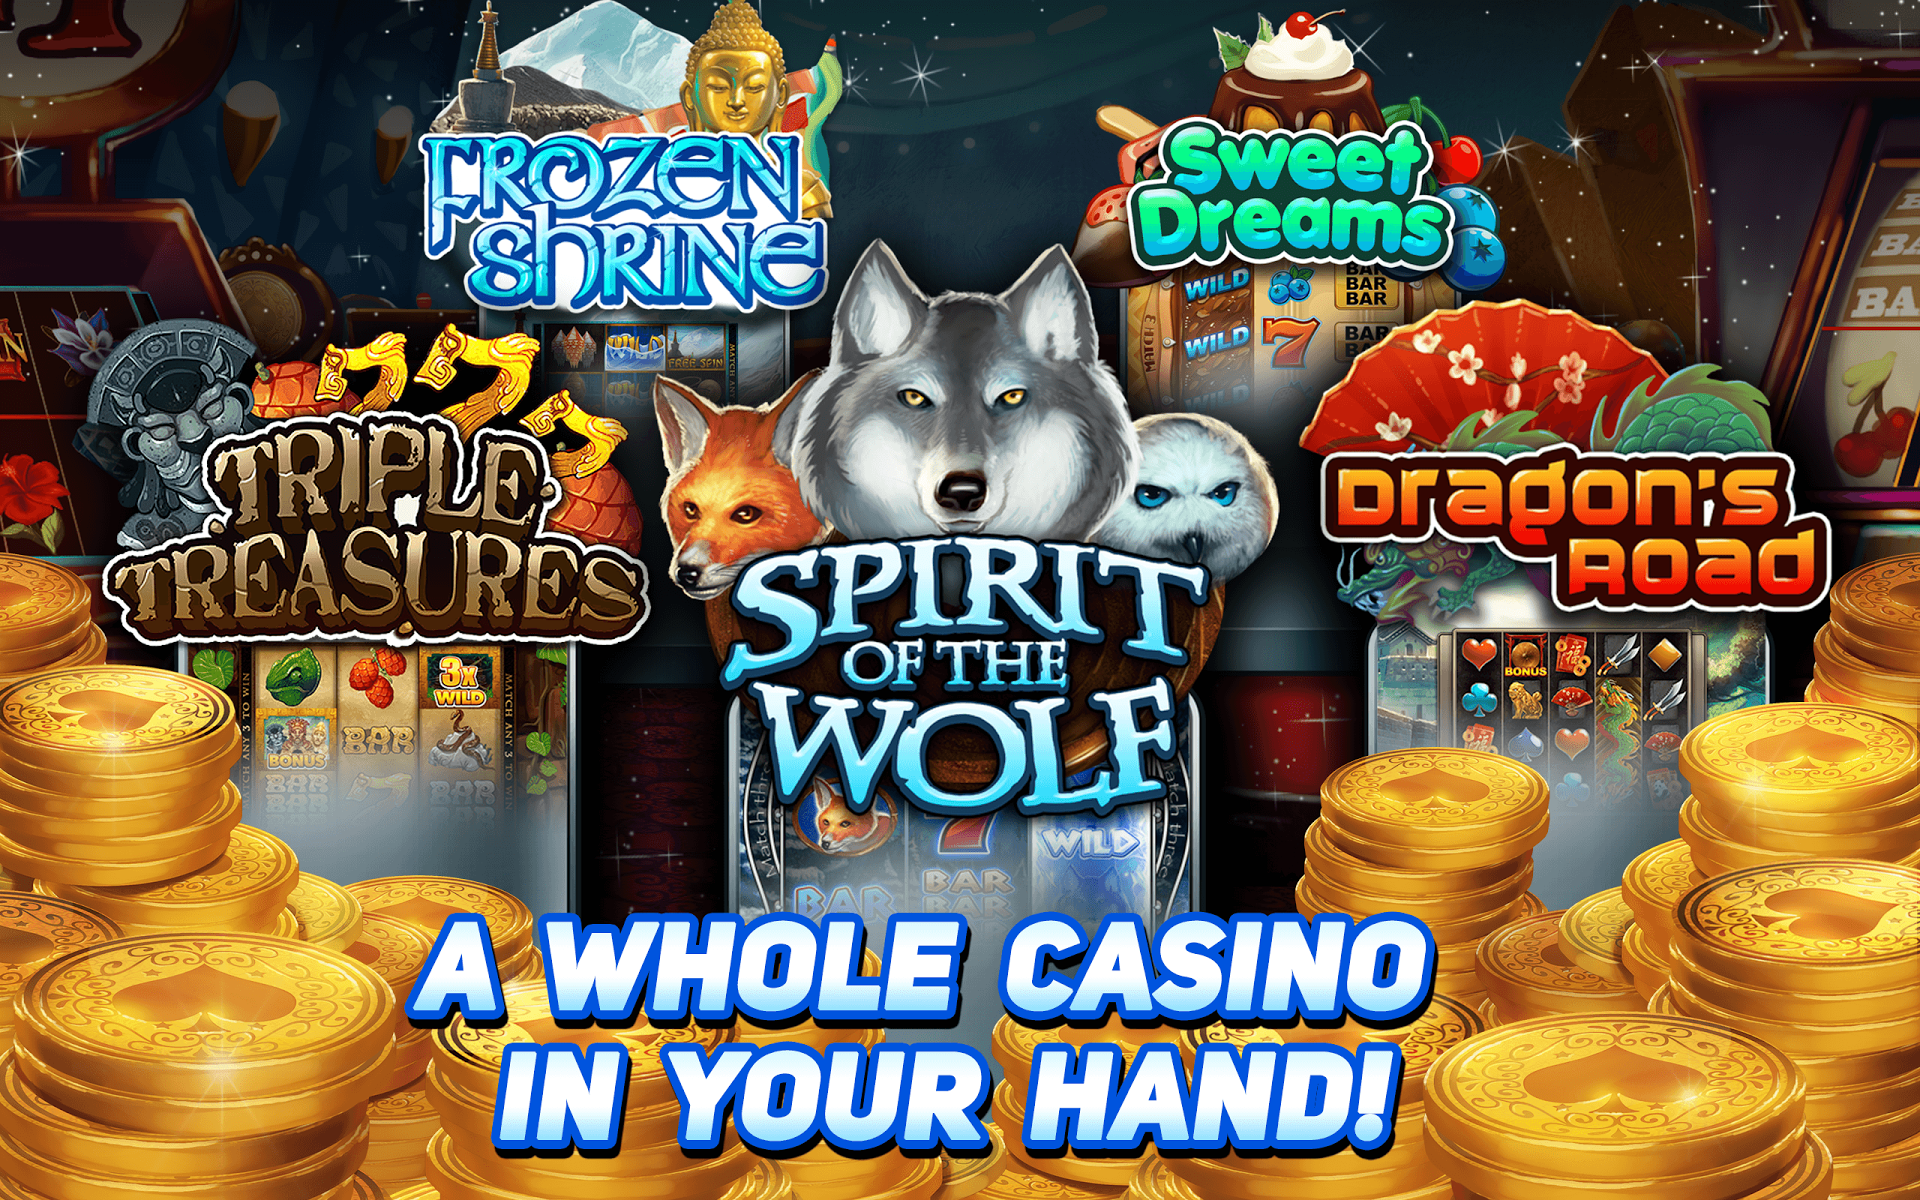 Gray wolf casino slots